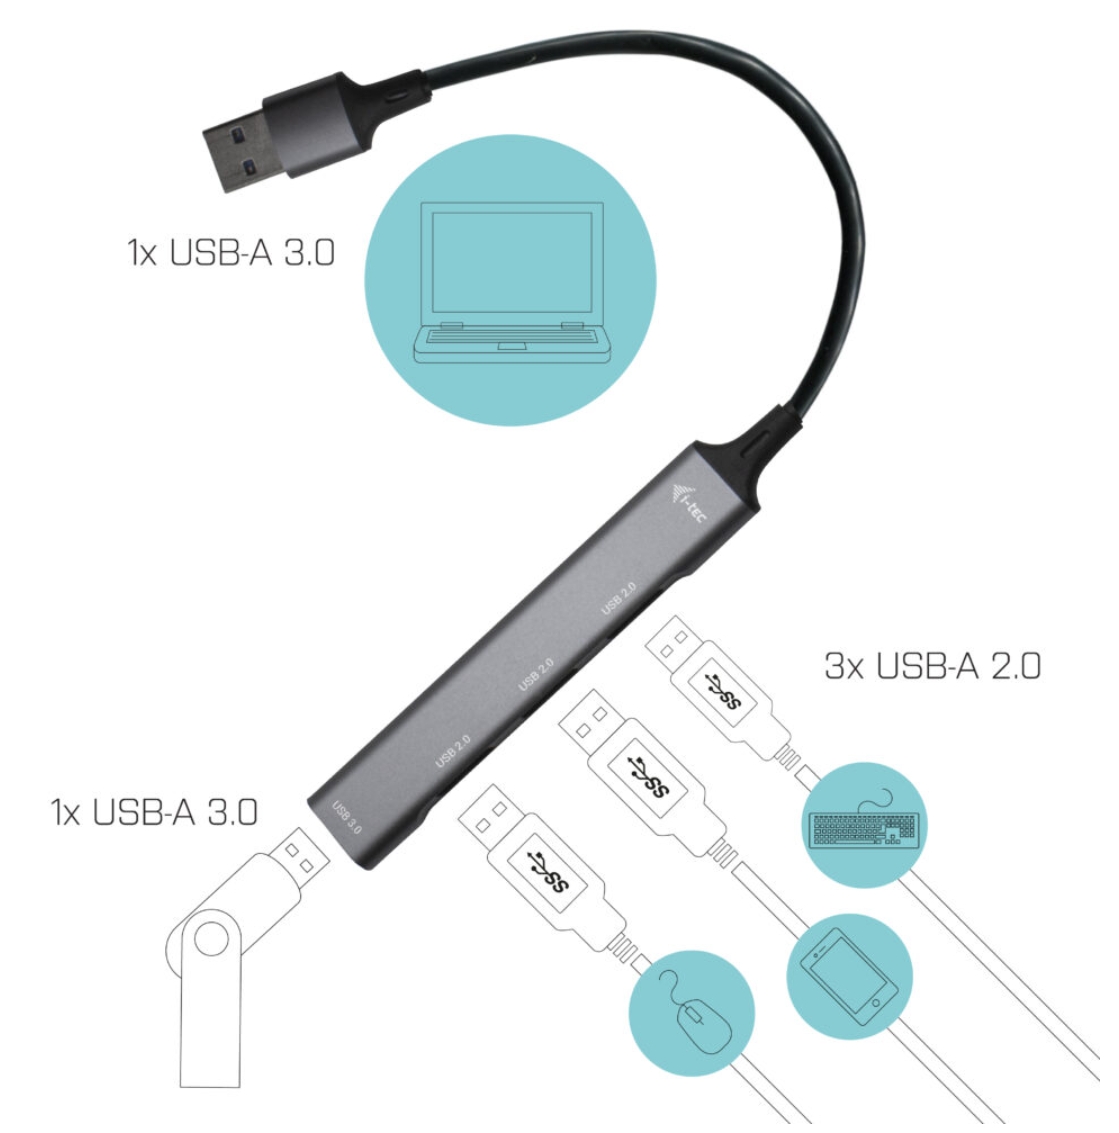 i-tec USB 3.0 Metal HUB 1x USB 3.0 + 3x USB 2.0 